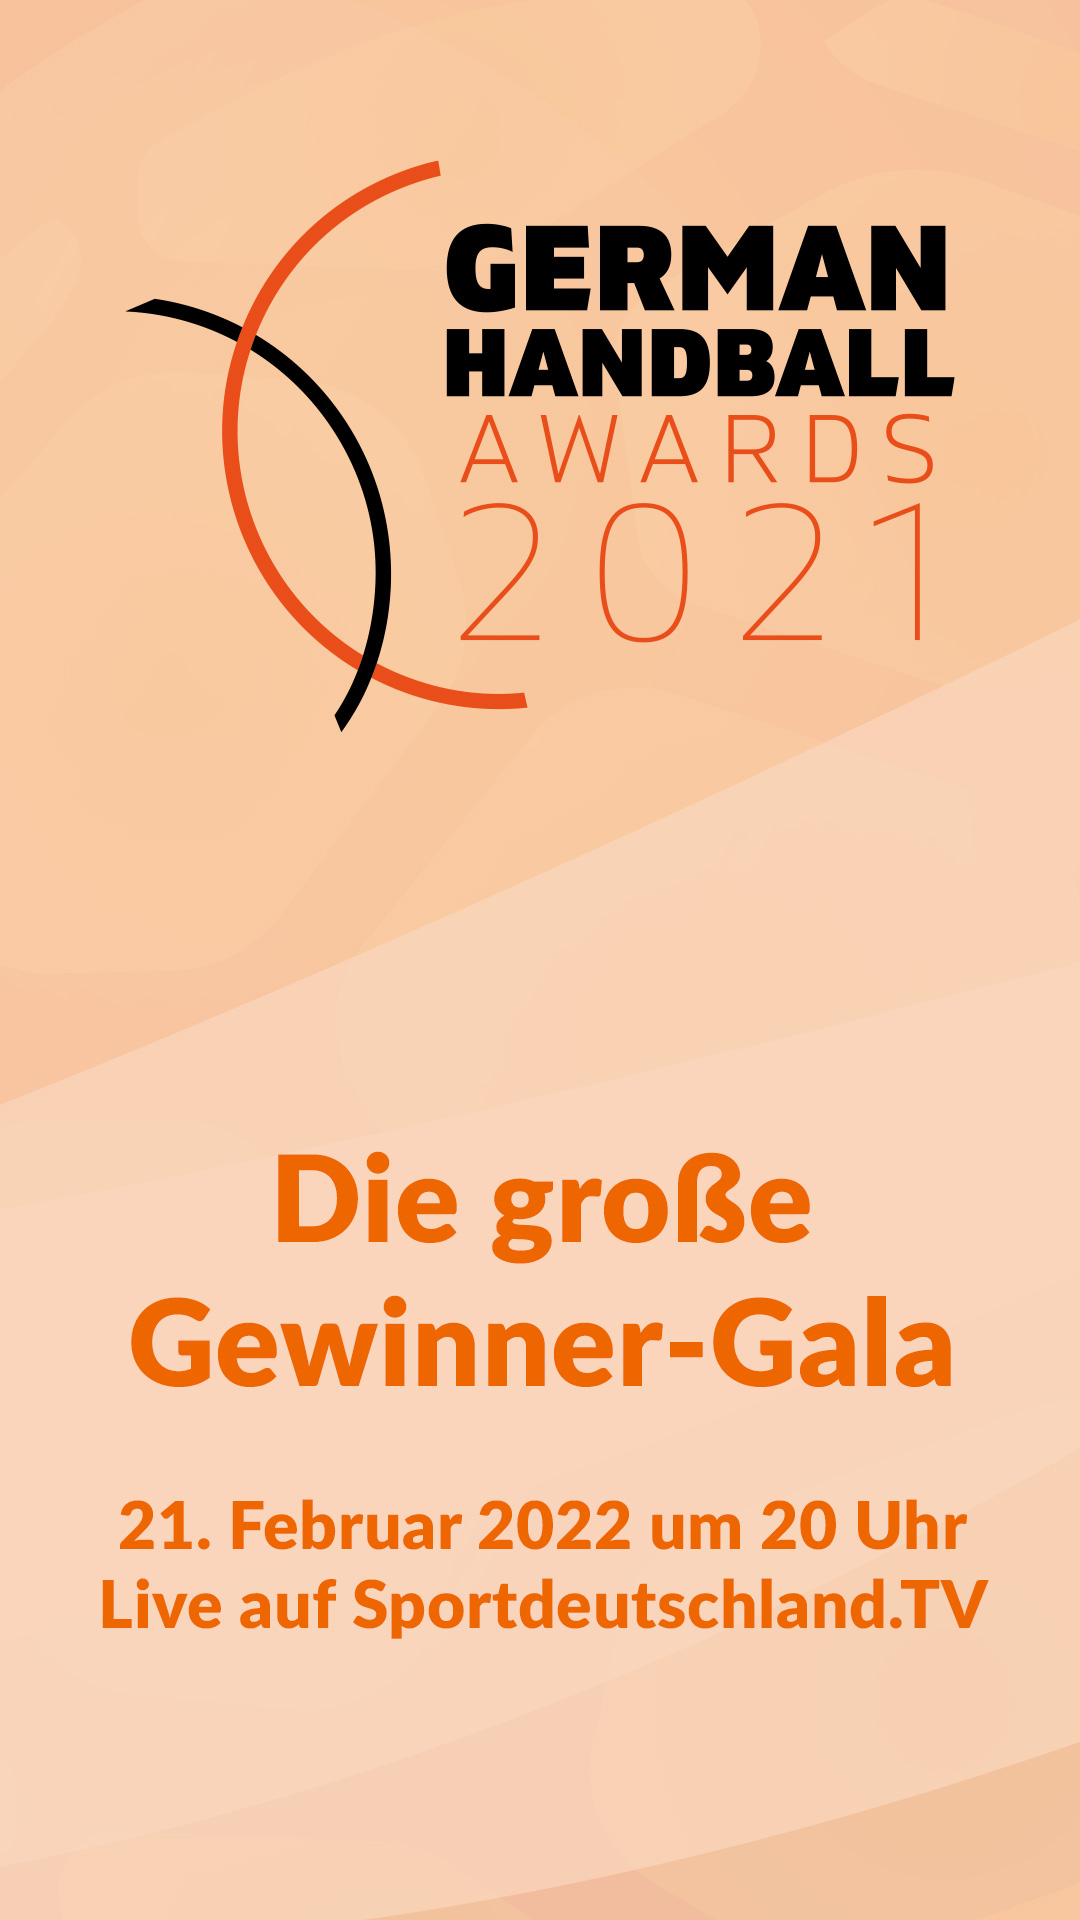 German Handball Awards 2021